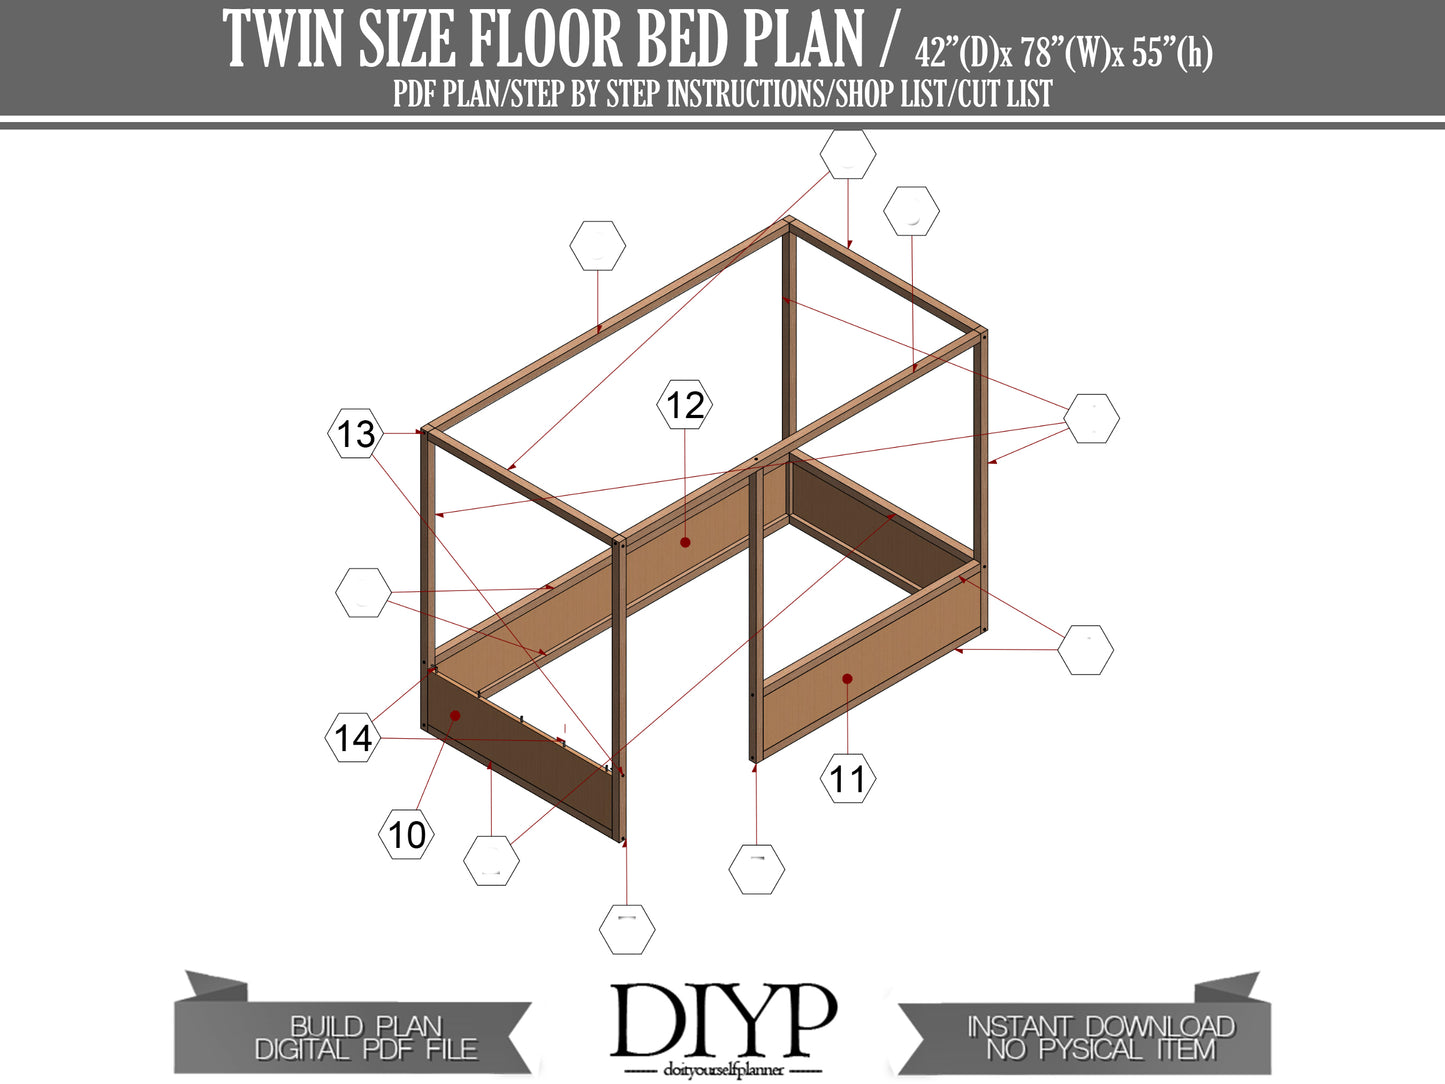 DIY Twin size Floor Bed plan, build plans for floor bed